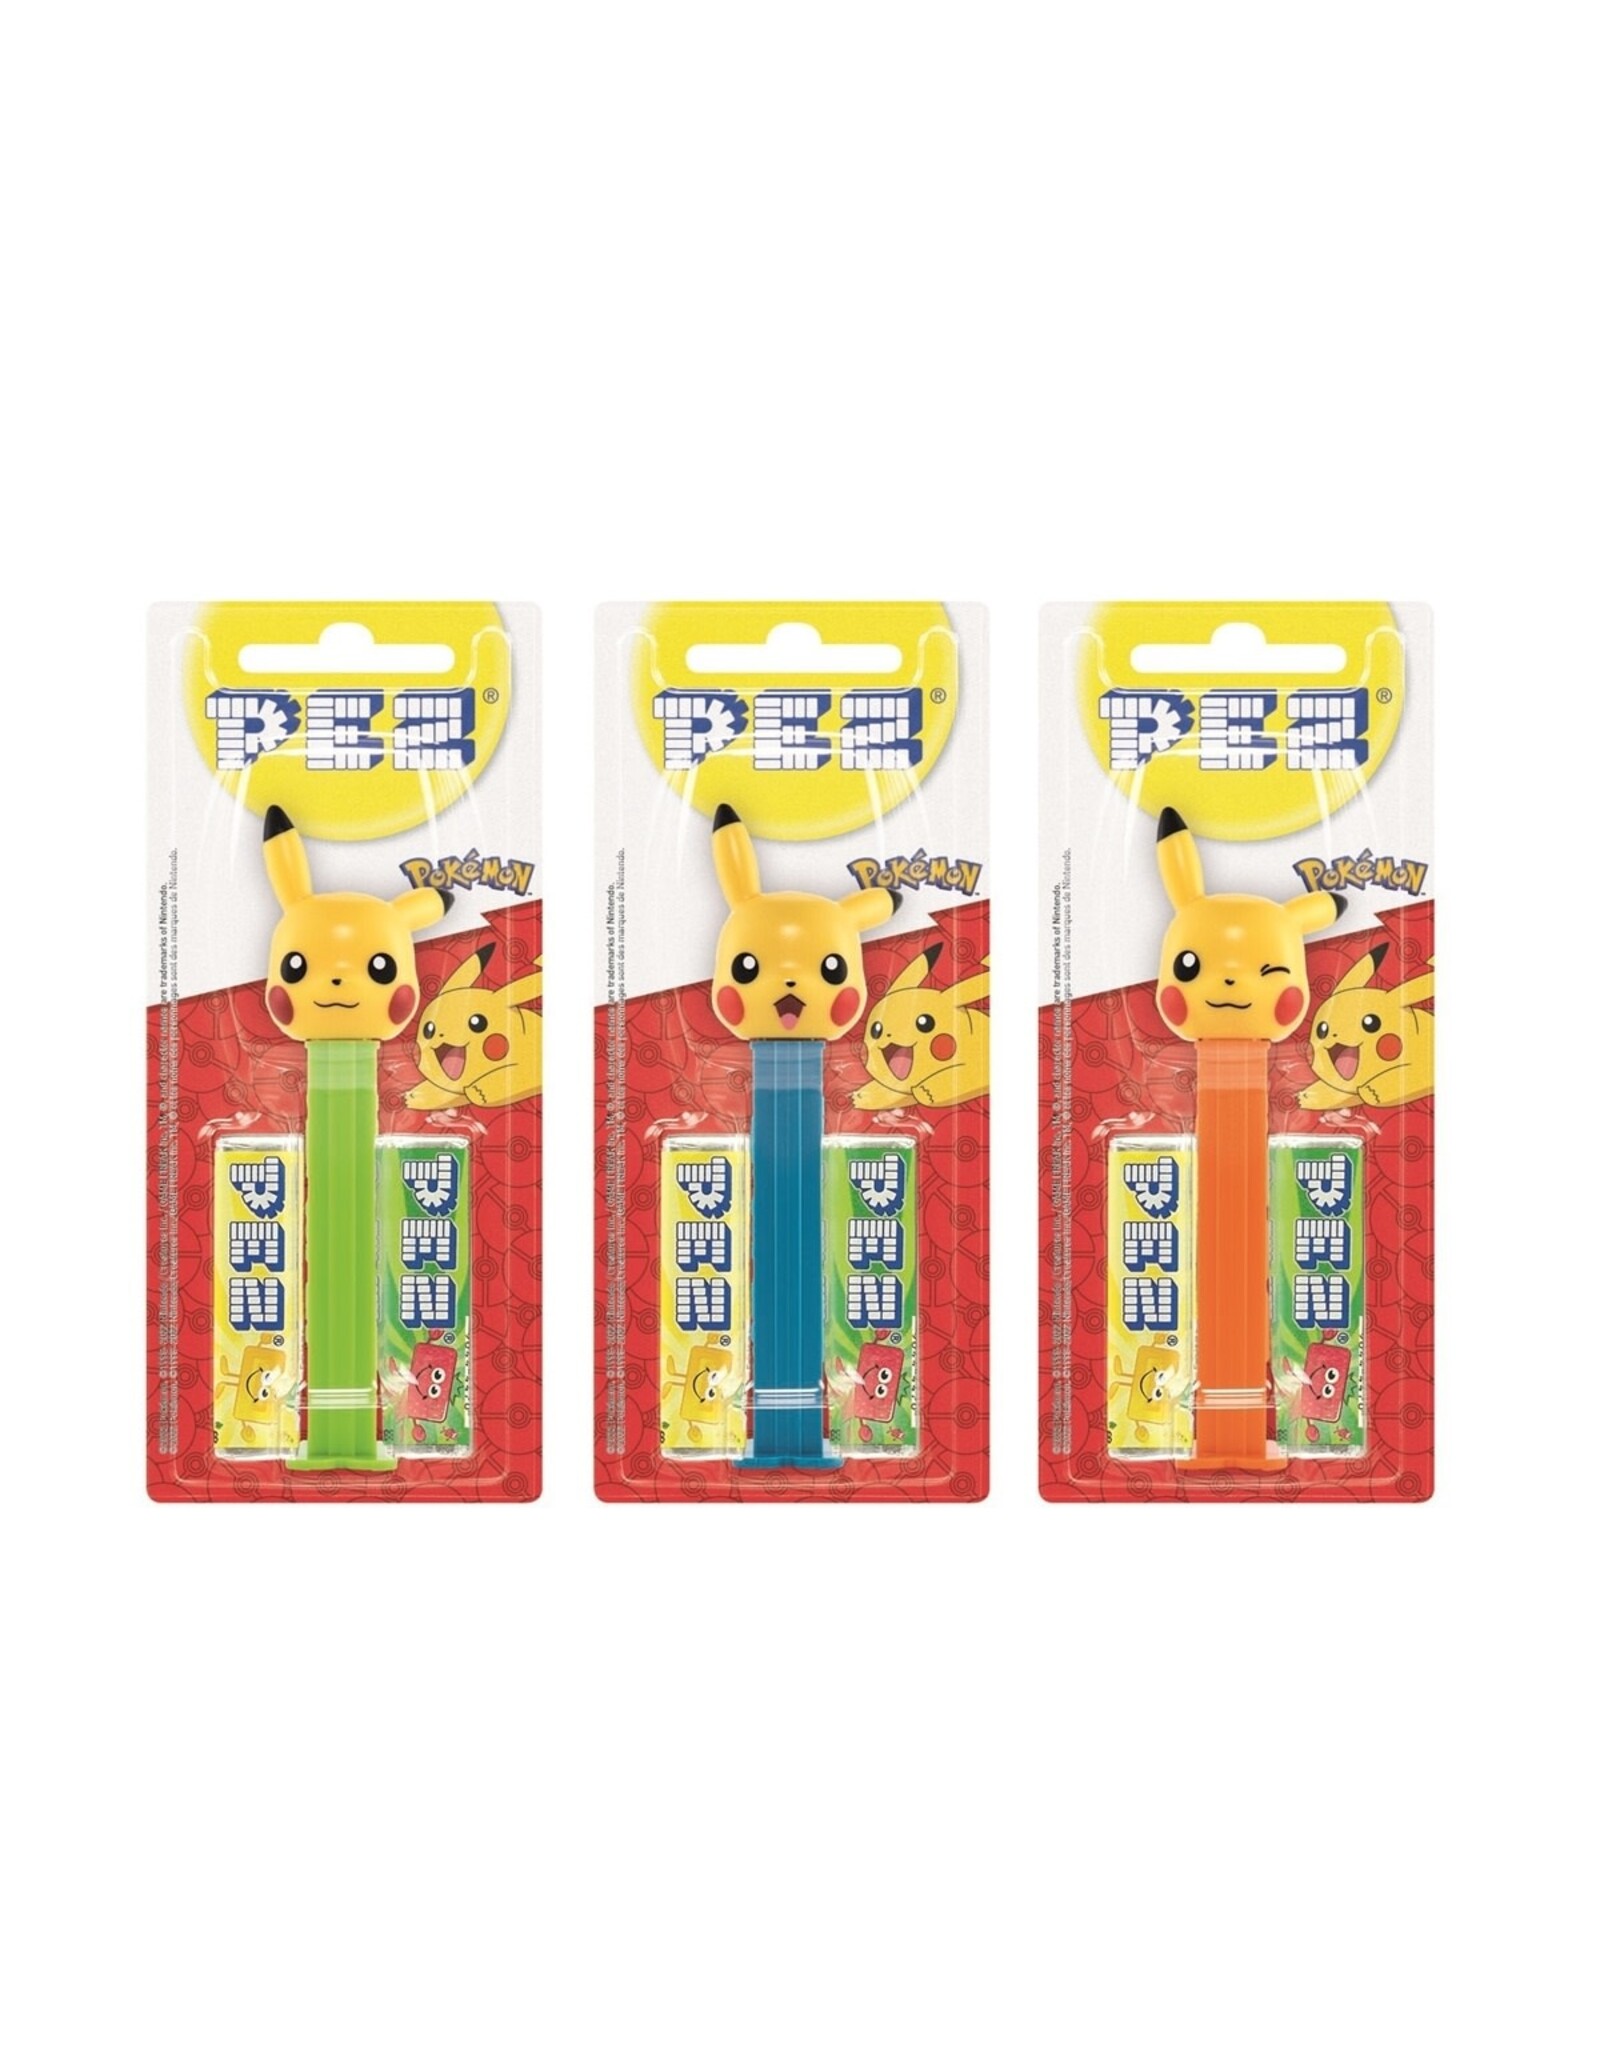 PEZ - Pikachu - 17g - Akiba